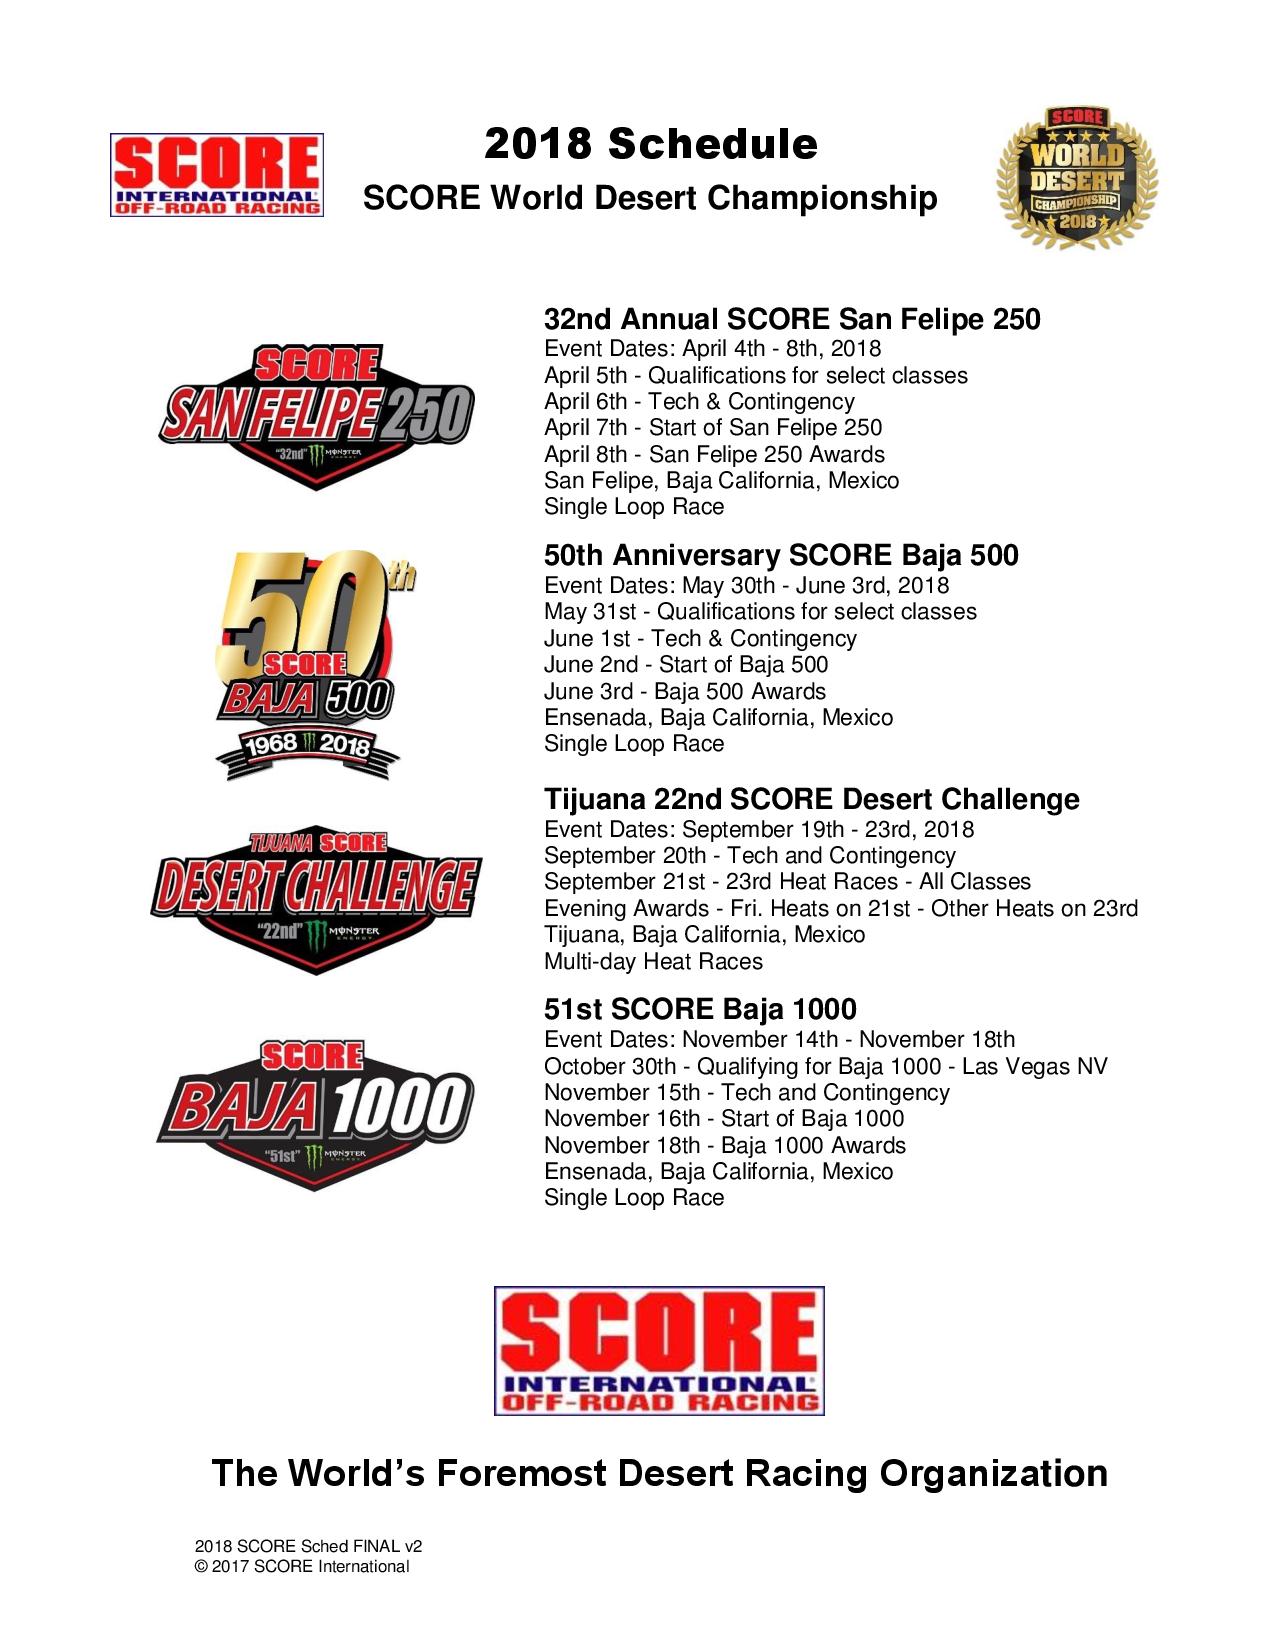 SCORE World Desert Championship 2018 Schedule